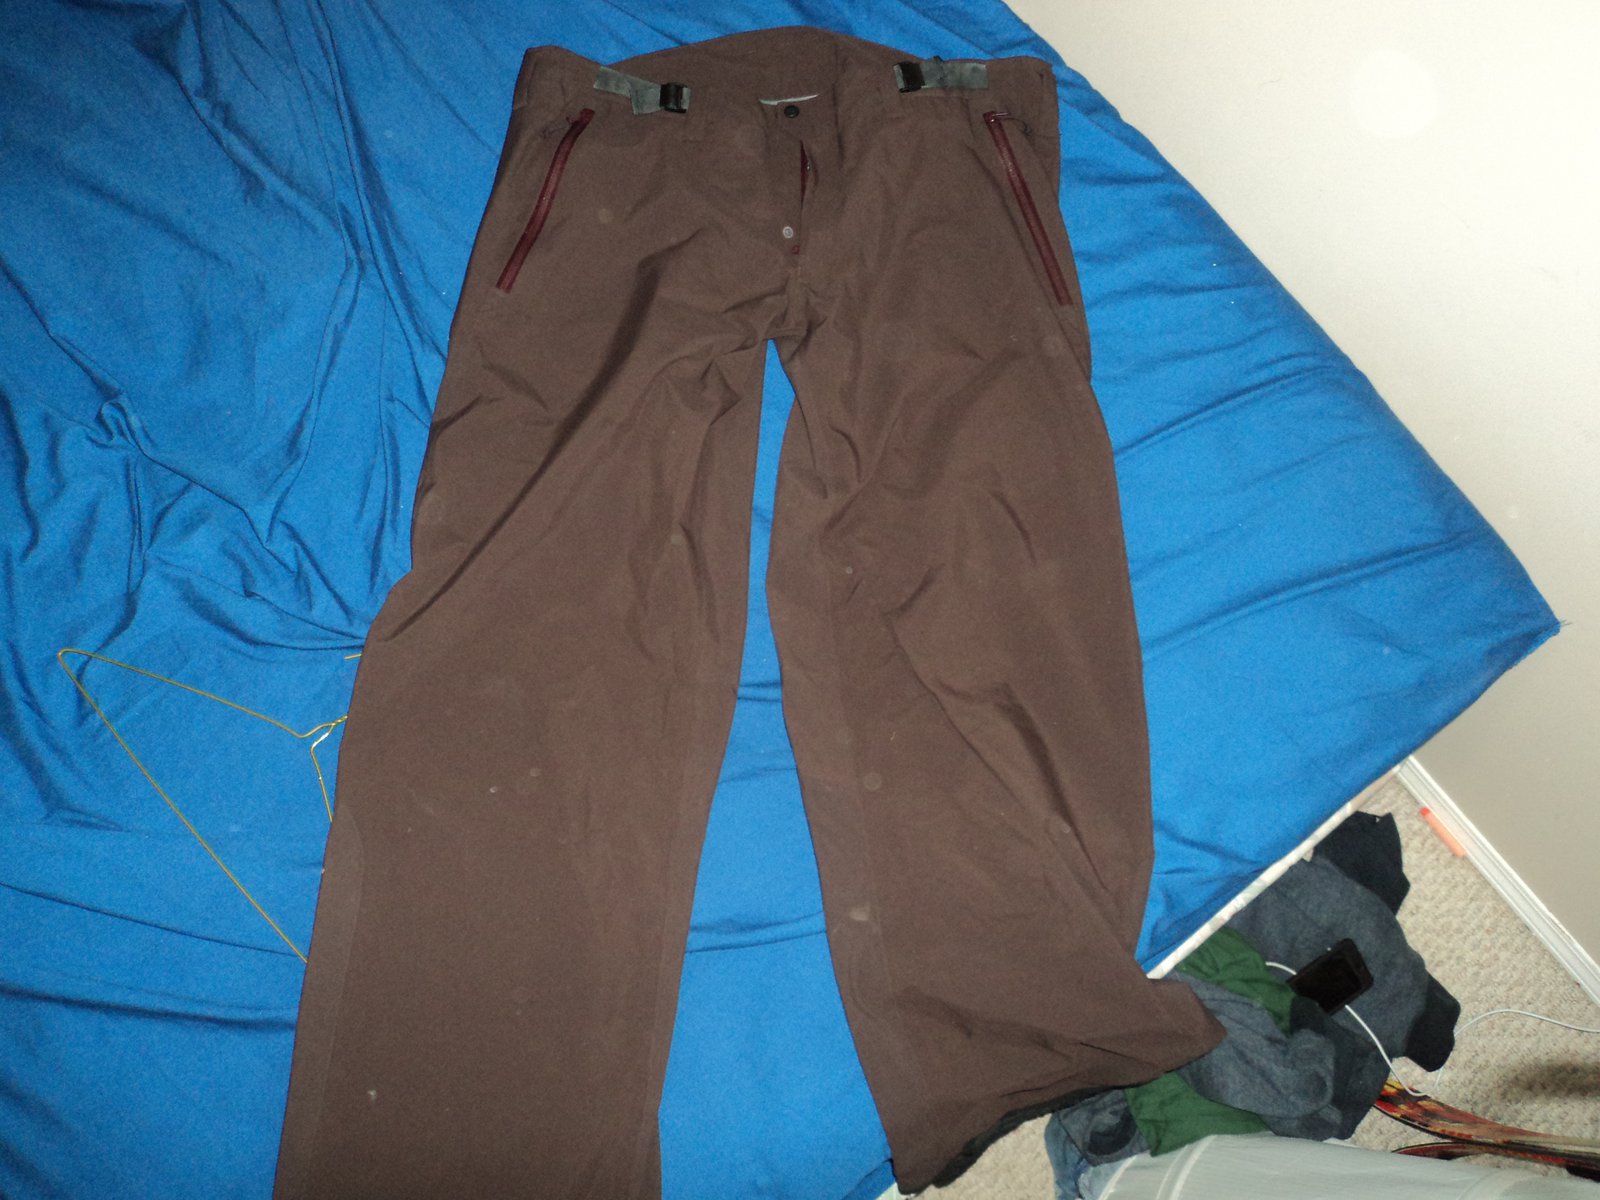 Arteryx xxl tall brown pants